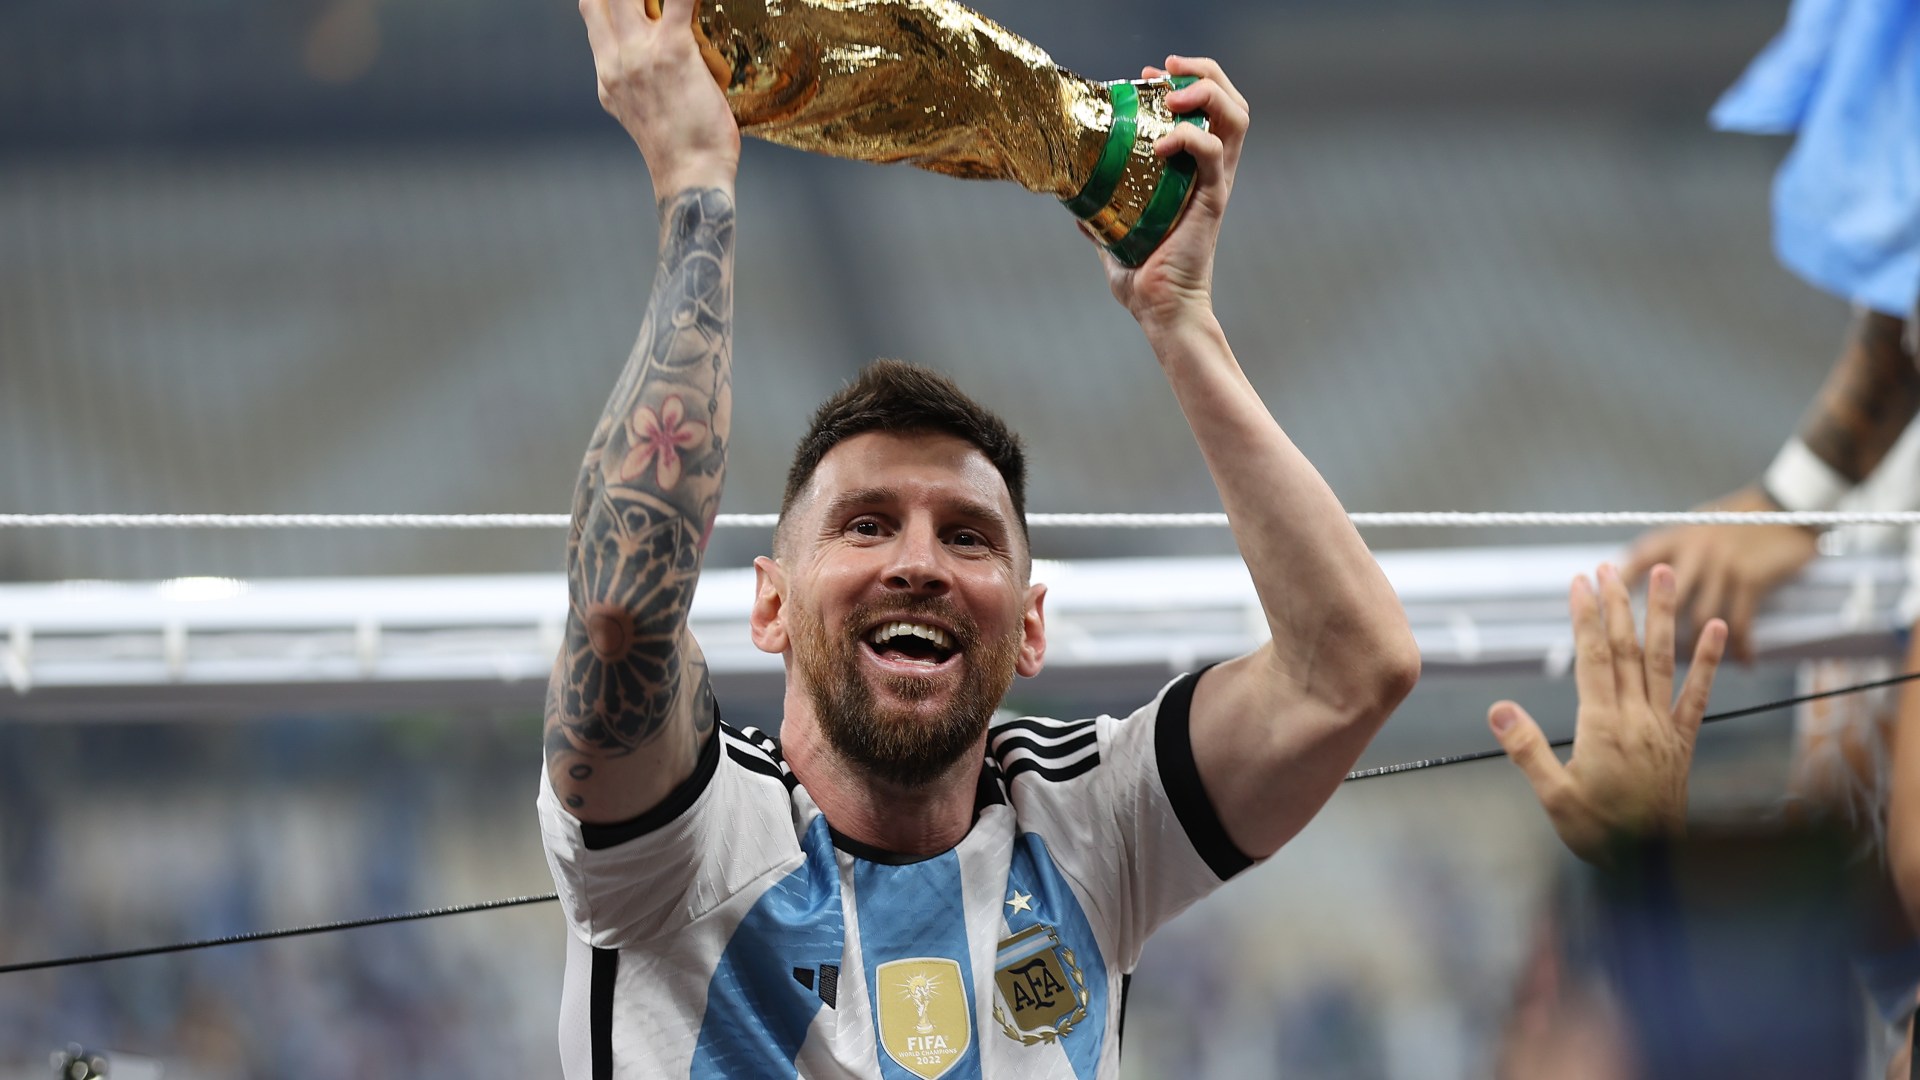 Argentina: Đội tuyển Argentina luôn được xem là một trong những đối thủ nặng ký nhất khi tham gia các giải đấu quốc tế. Tinh thần chiến đấu và kỹ năng của các cầu thủ Argentina đã ghi dấu ấn trong lịch sử bóng đá thế giới. Hãy cùng chiêm ngưỡng những hình ảnh sống động liên quan đến từ khóa \